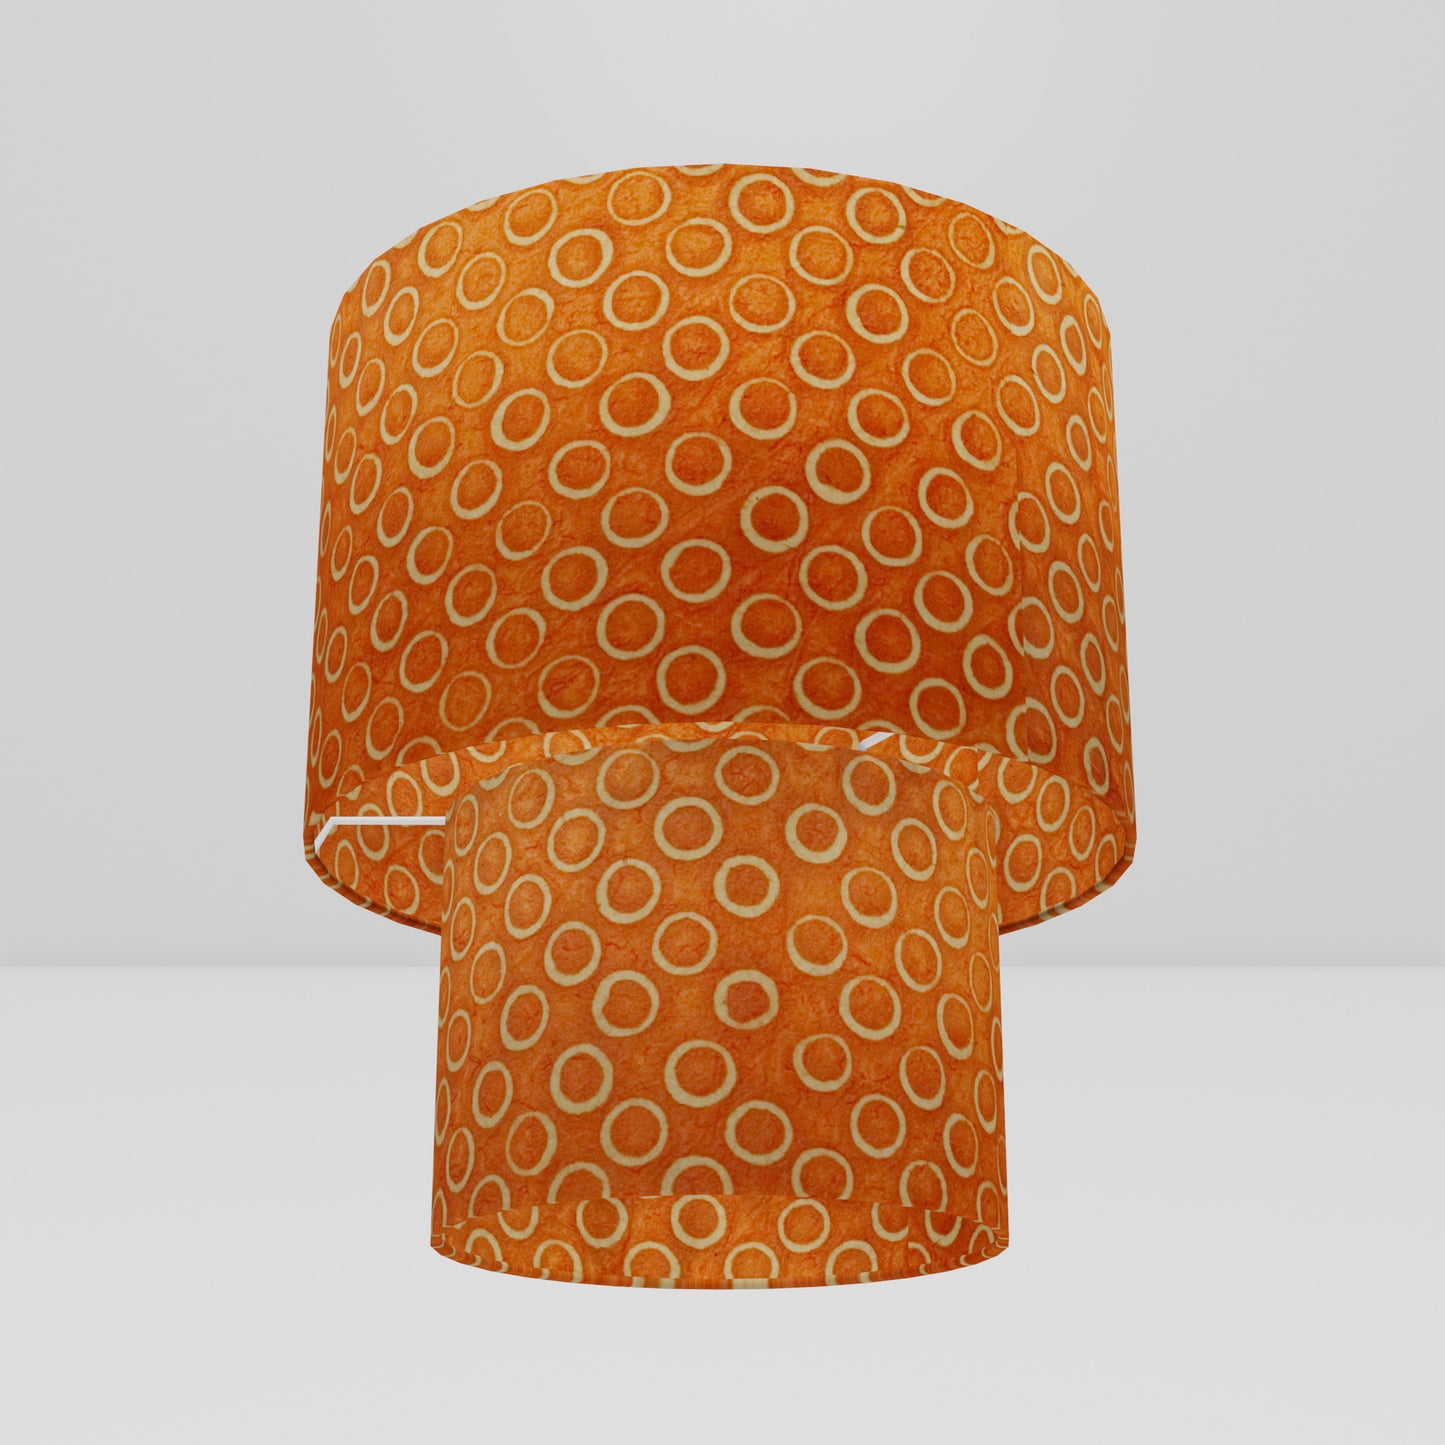 2 Tier Lamp Shade - P03 - Batik Orange Circles, 30cm x 20cm & 20cm x 15cm